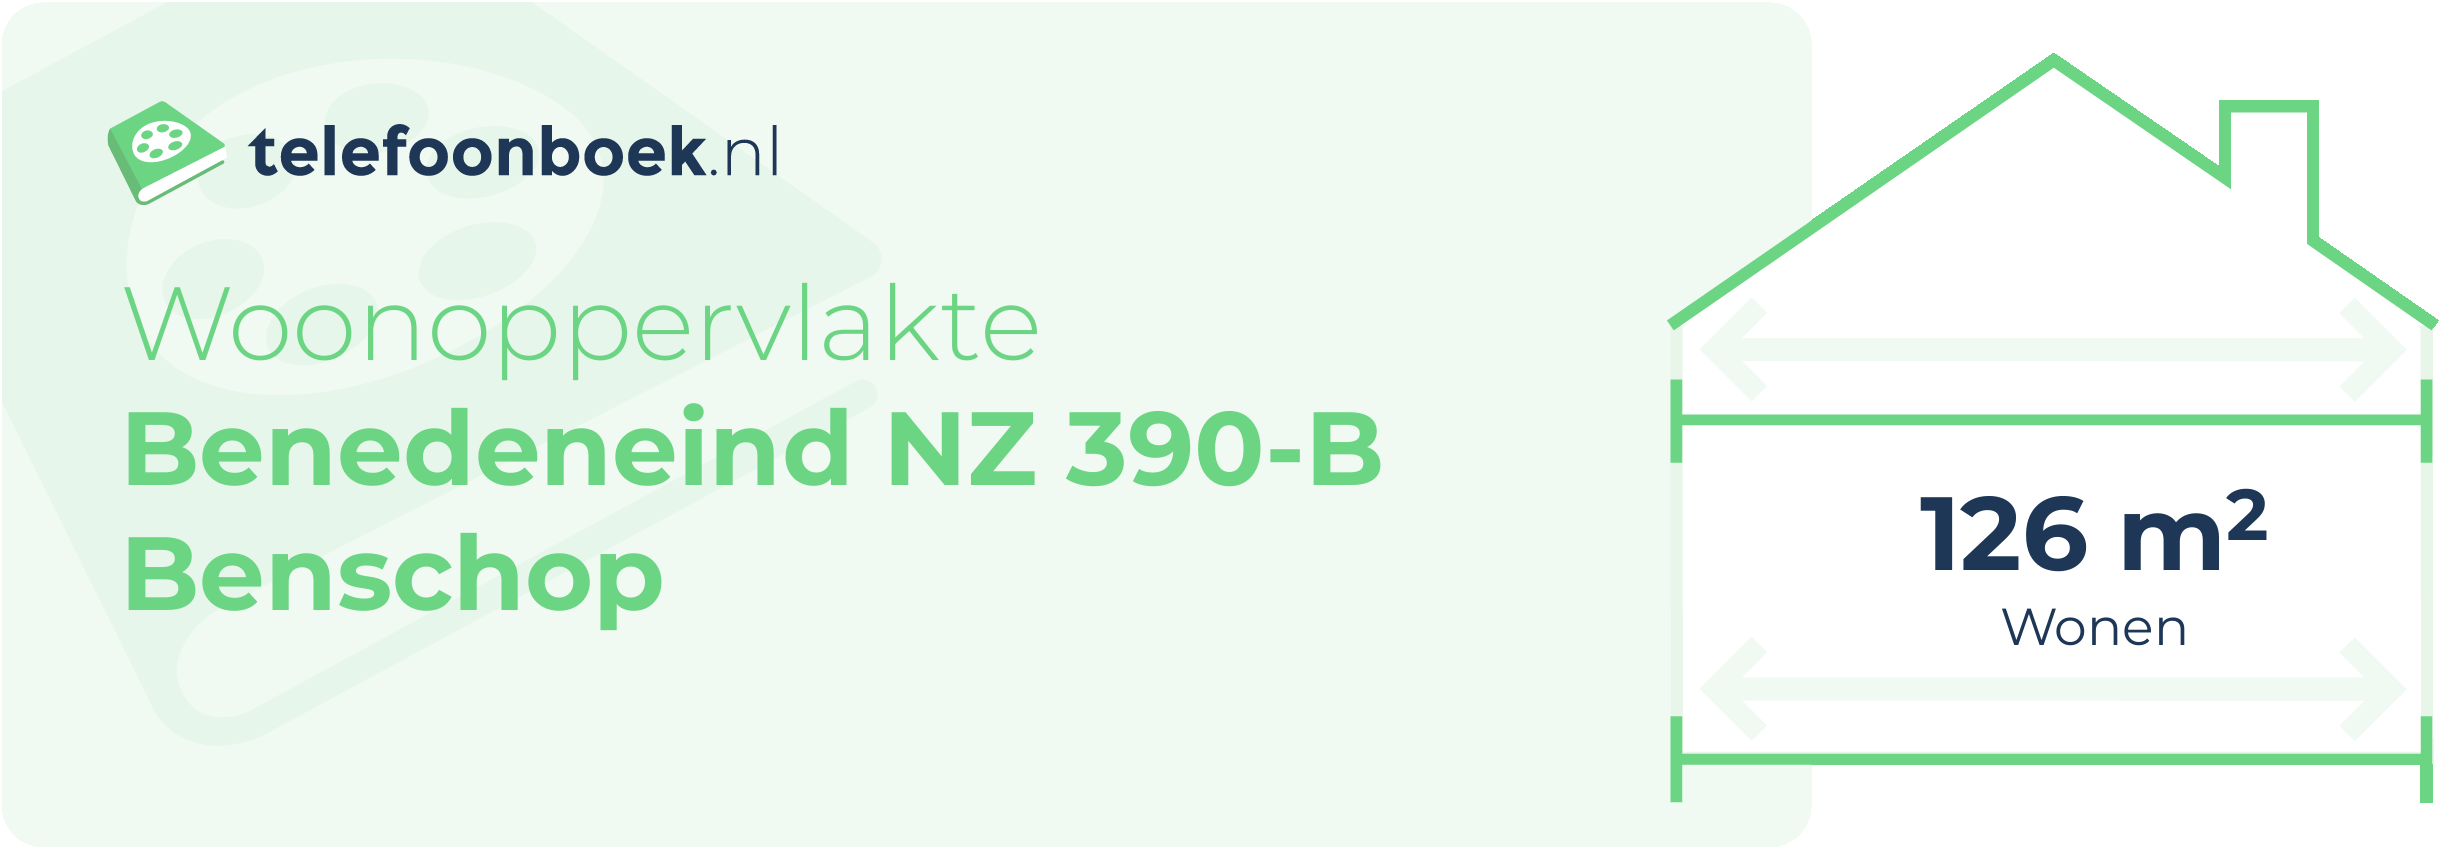 Woonoppervlakte Benedeneind NZ 390-B Benschop